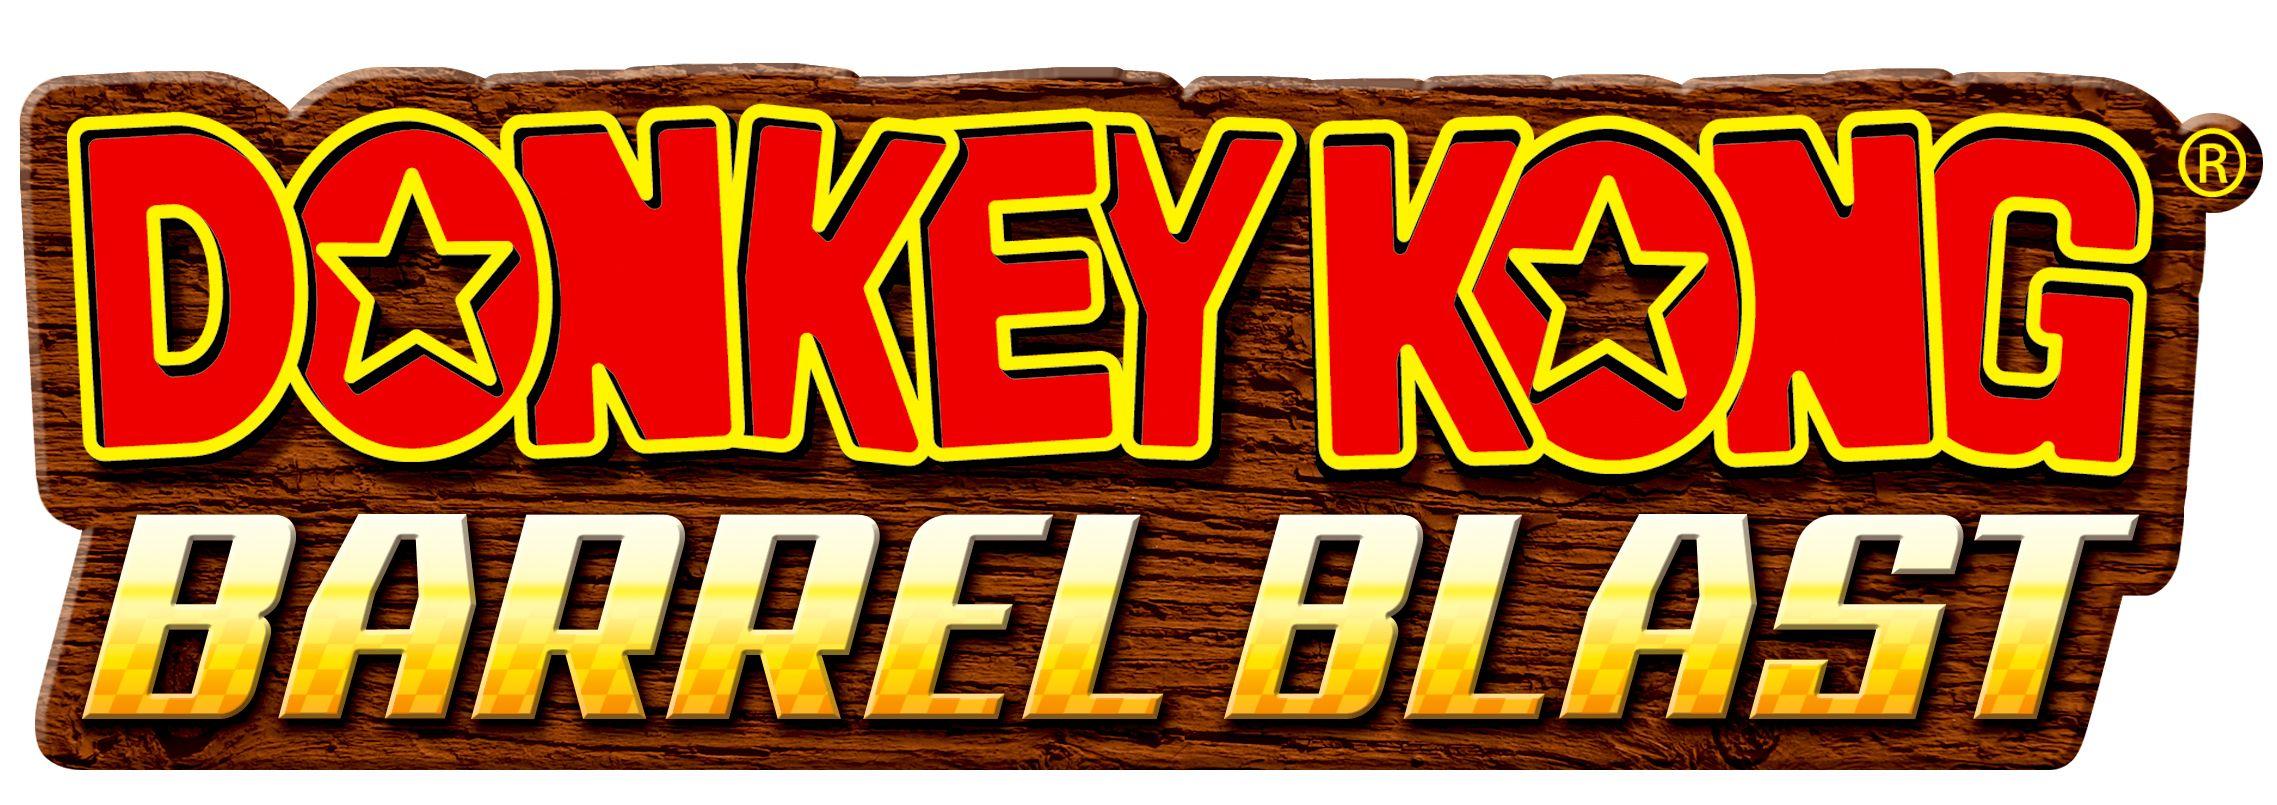 Donkey Kong Logo - File:Donkey Kong logo.png - Wikimedia Commons